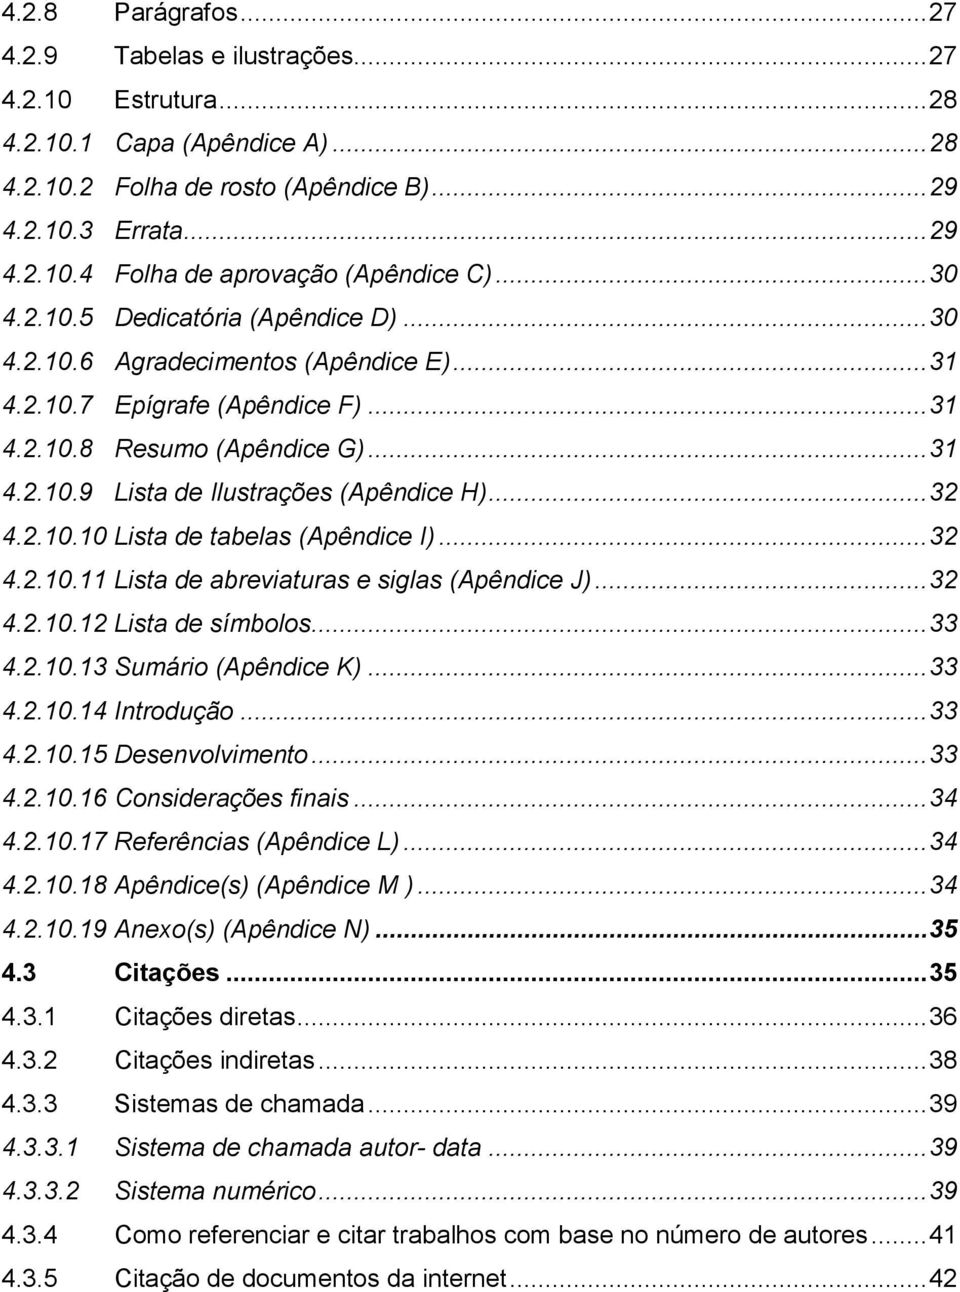 .. 32 4.2.10.10 Lista de tabelas (Apêndice I)... 32 4.2.10.11 Lista de abreviaturas e siglas (Apêndice J)... 32 4.2.10.12 Lista de símbolos... 33 4.2.10.13 Sumário (Apêndice K)... 33 4.2.10.14 Introdução.